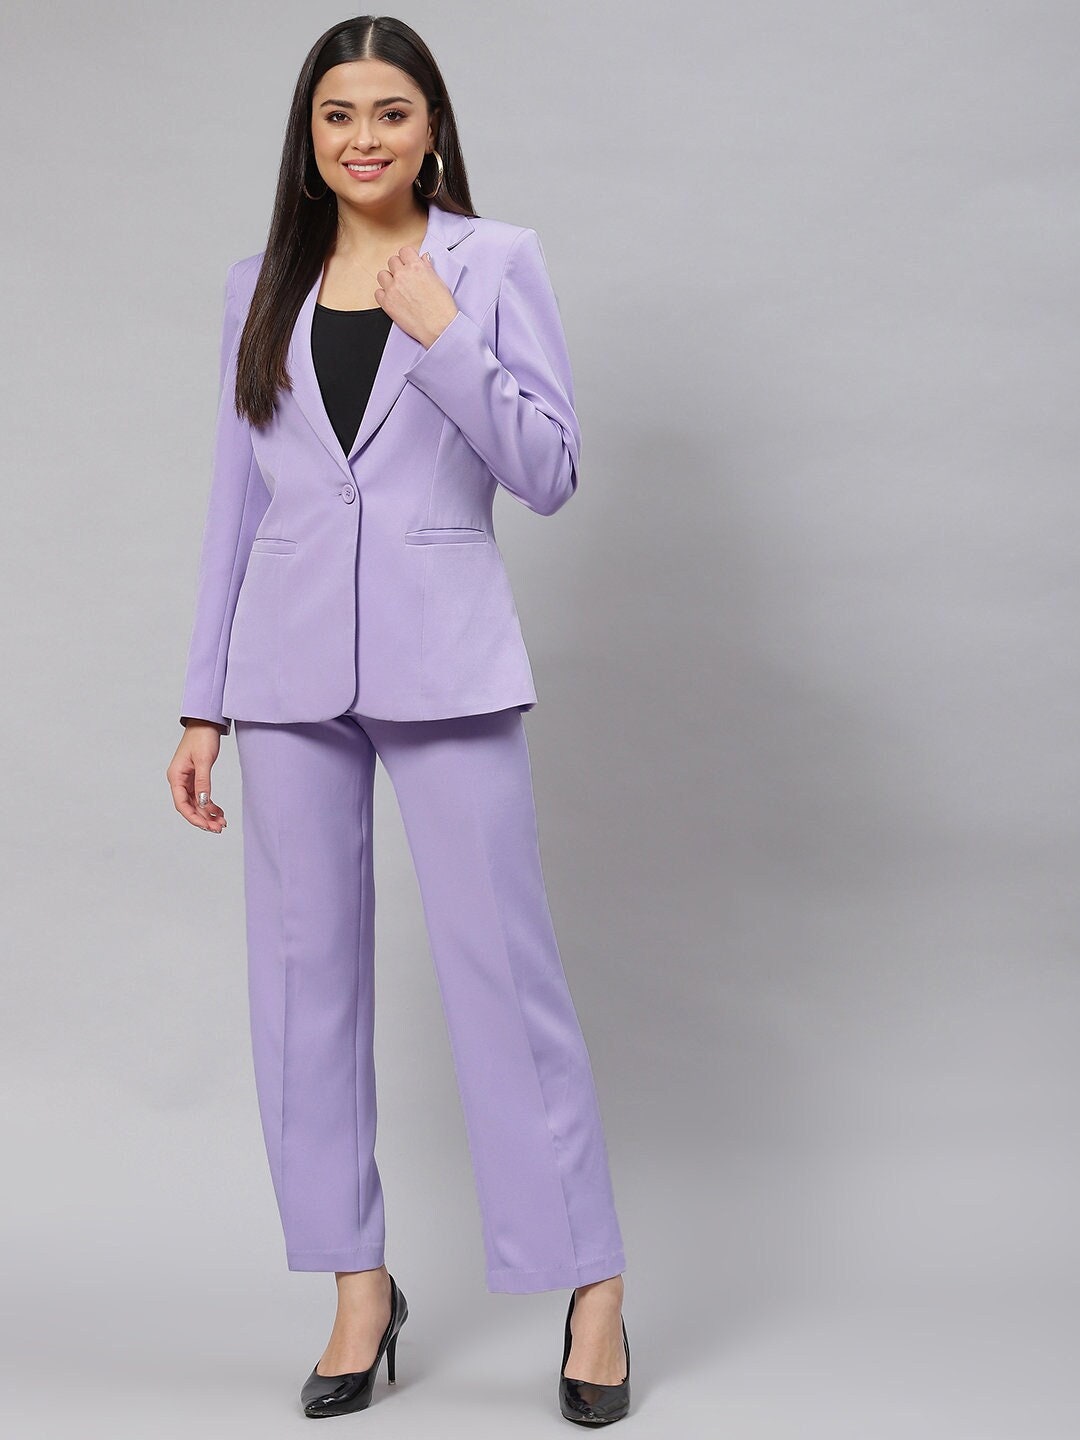 Lavender Stretch Pantsuit for Women, Two Piece Deep V Blazer & Trouser,  Business Pant Suit, Office, Wedding, Evening, Party Pantsuit 